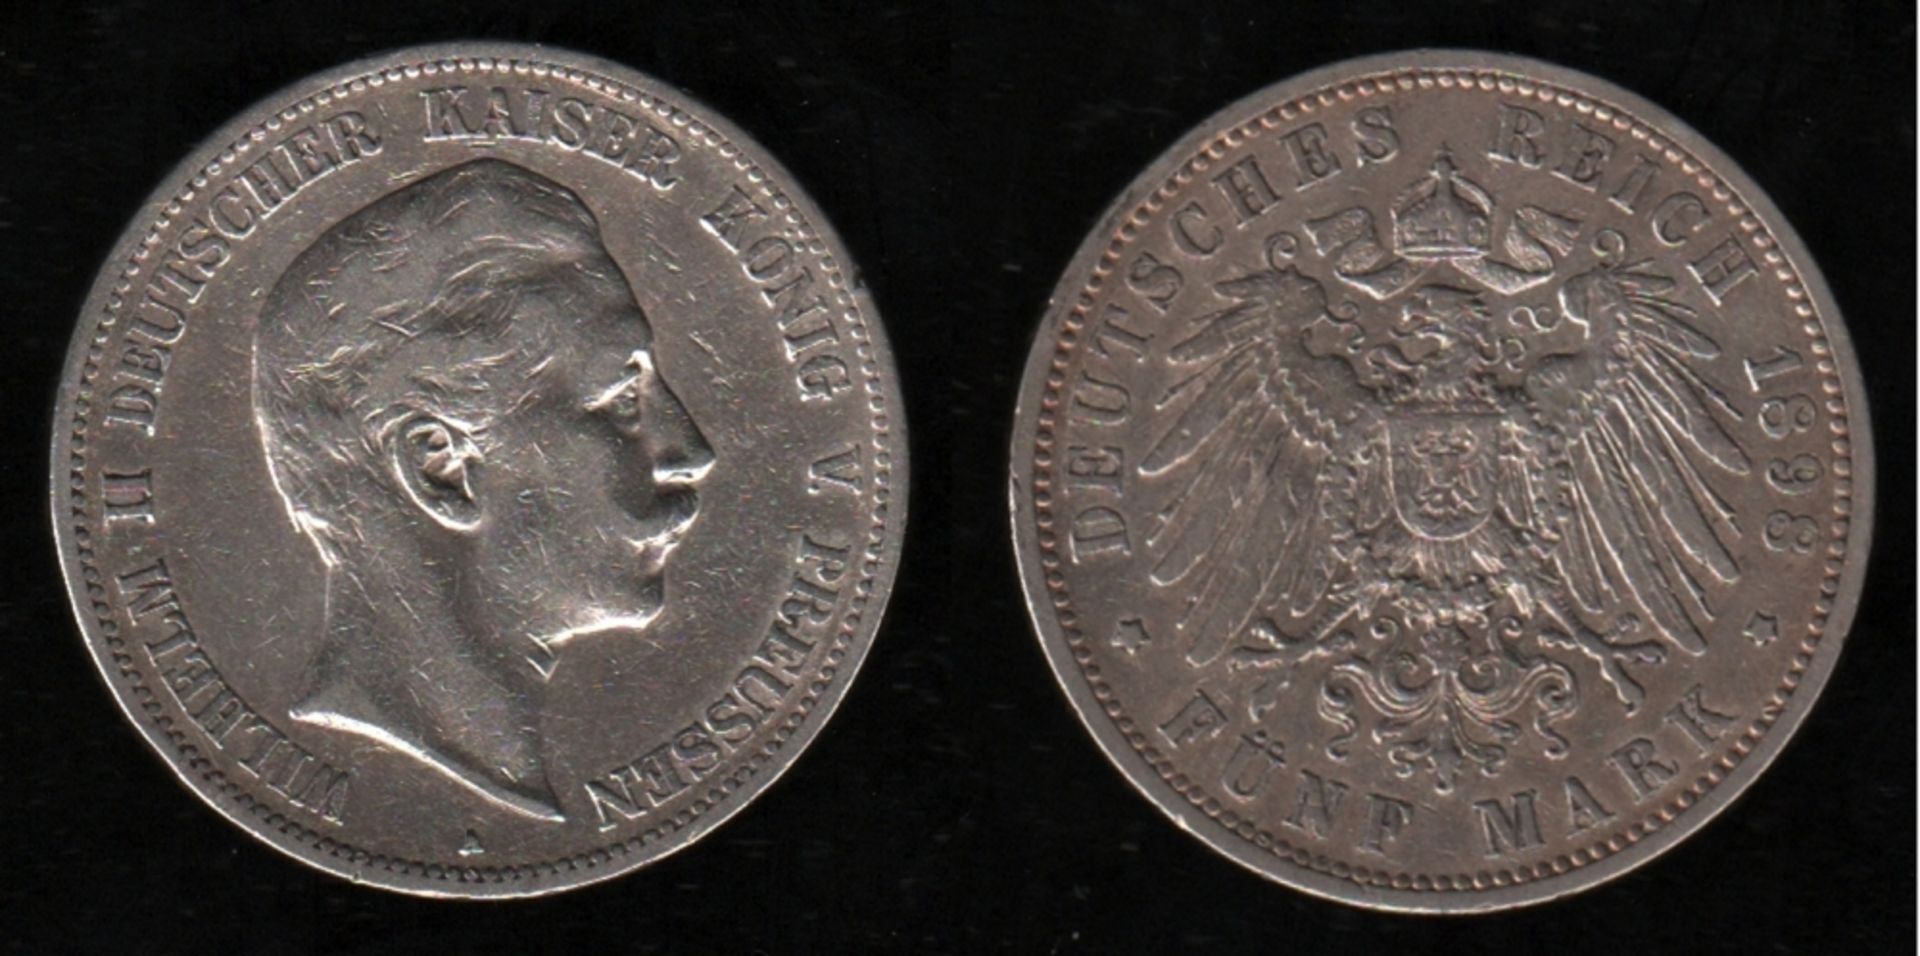 Deutsches Reich. Silbermünze. 5 Mark. Wilhelm II., Deutscher Kaiser. A 1898. Vorderseite: Porträt